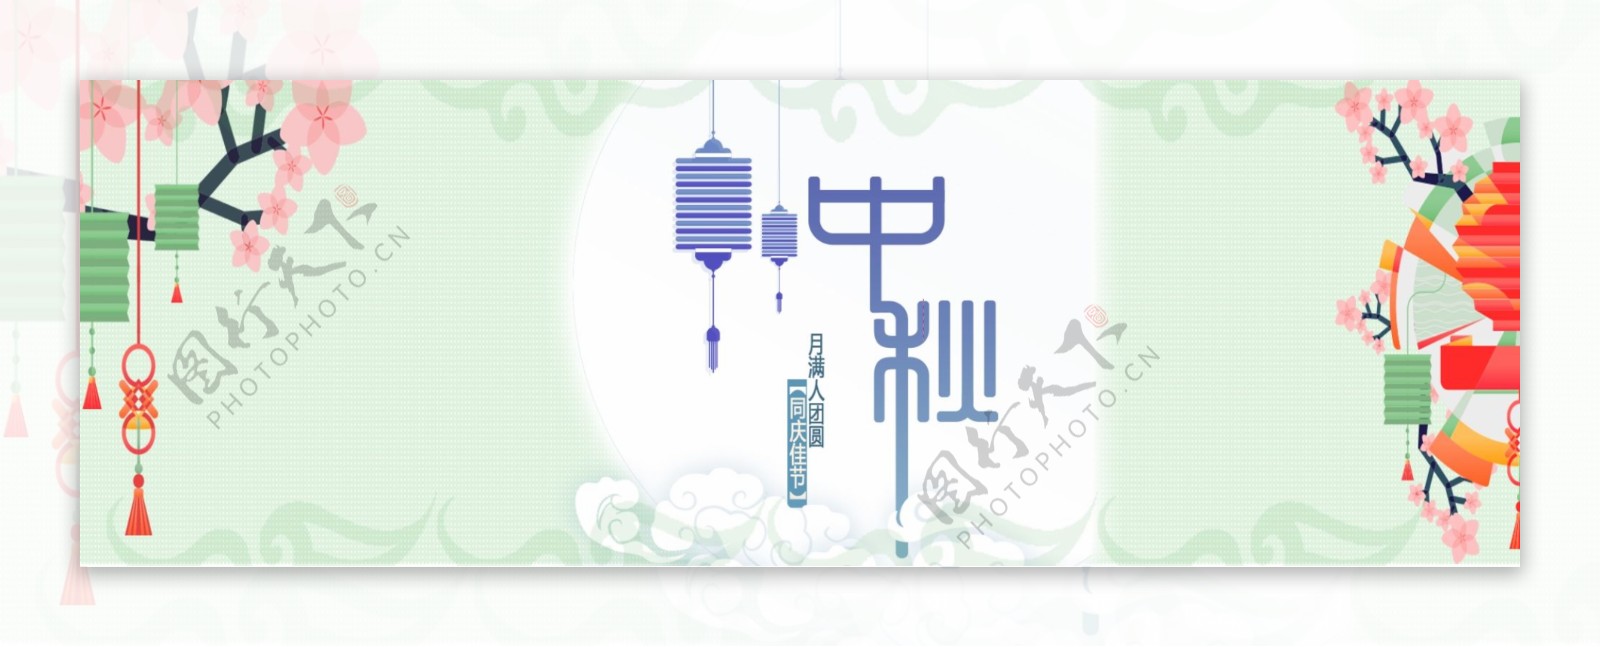 电商淘宝天猫食品月饼清新风格中秋节促销海报banner模板设计中秋海报